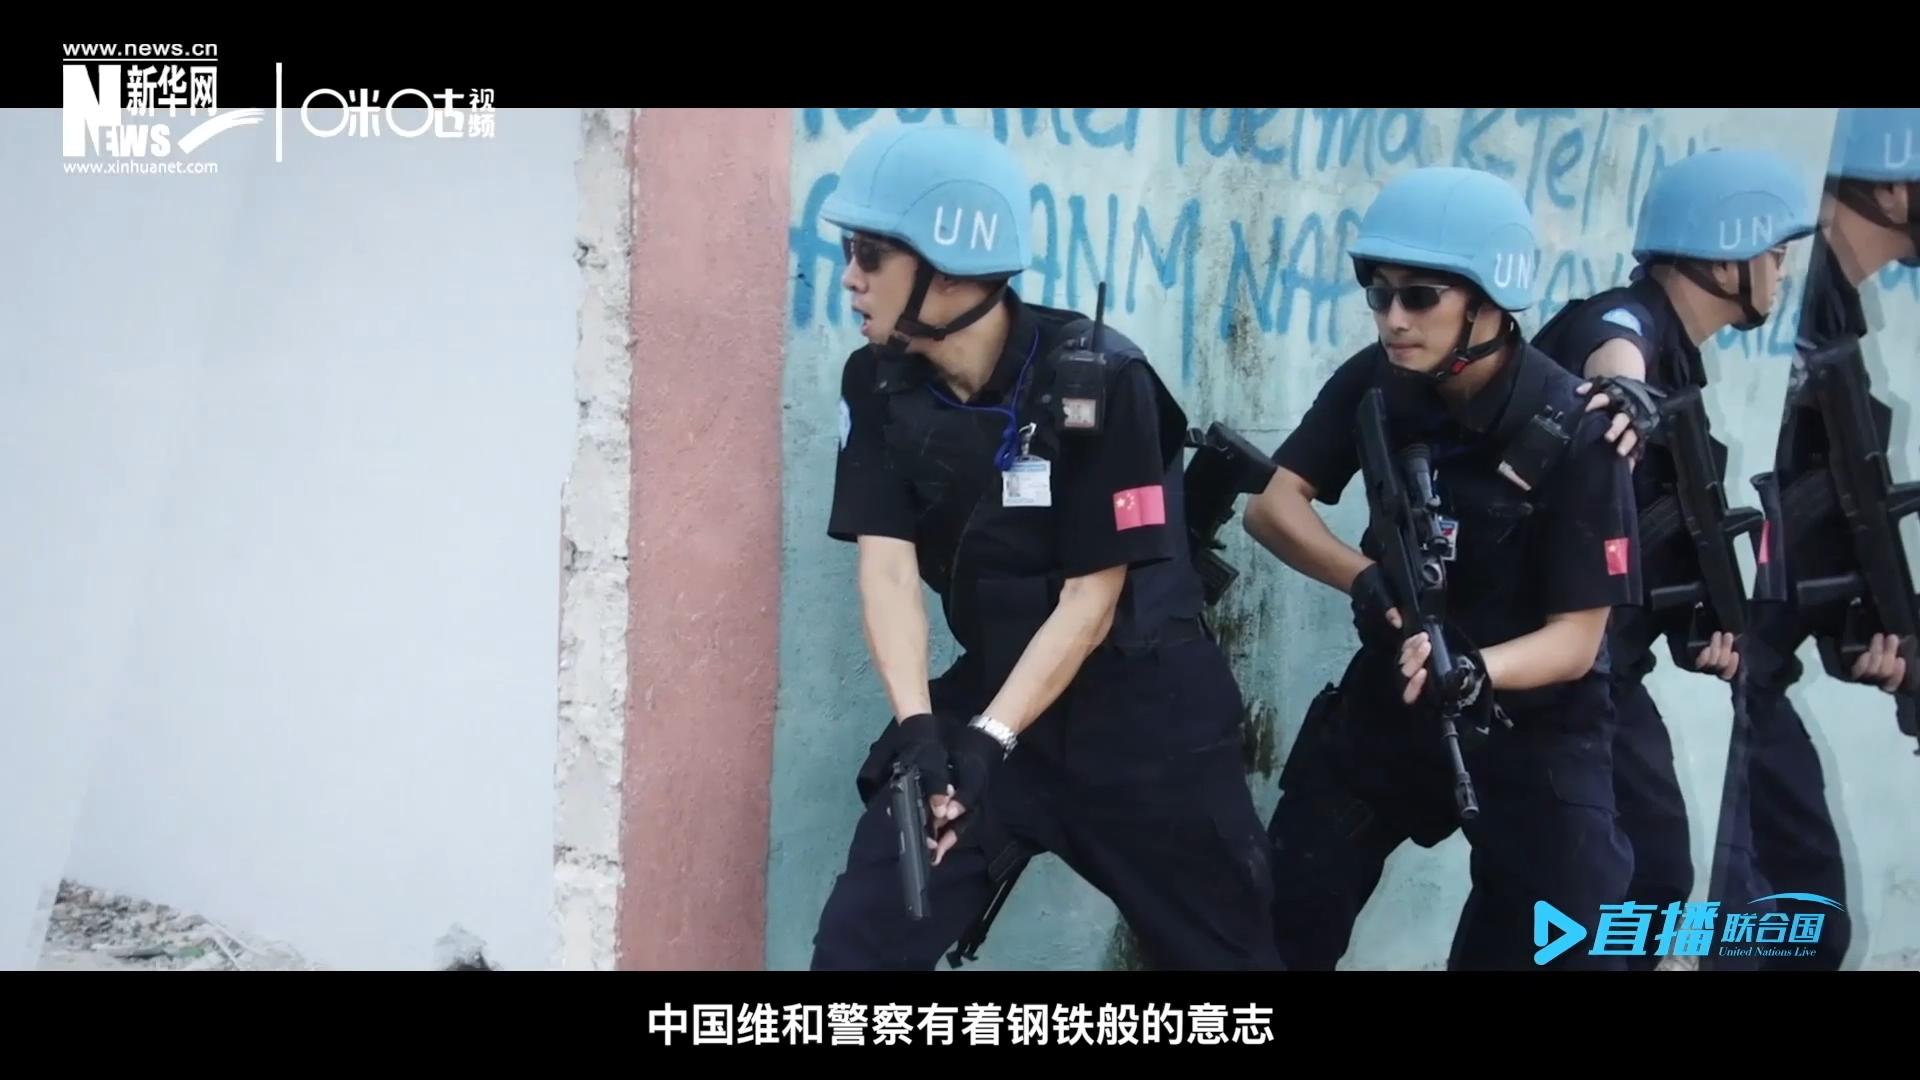 中国维和警察有着钢铁般的意志，但也有着一颗柔软的心。